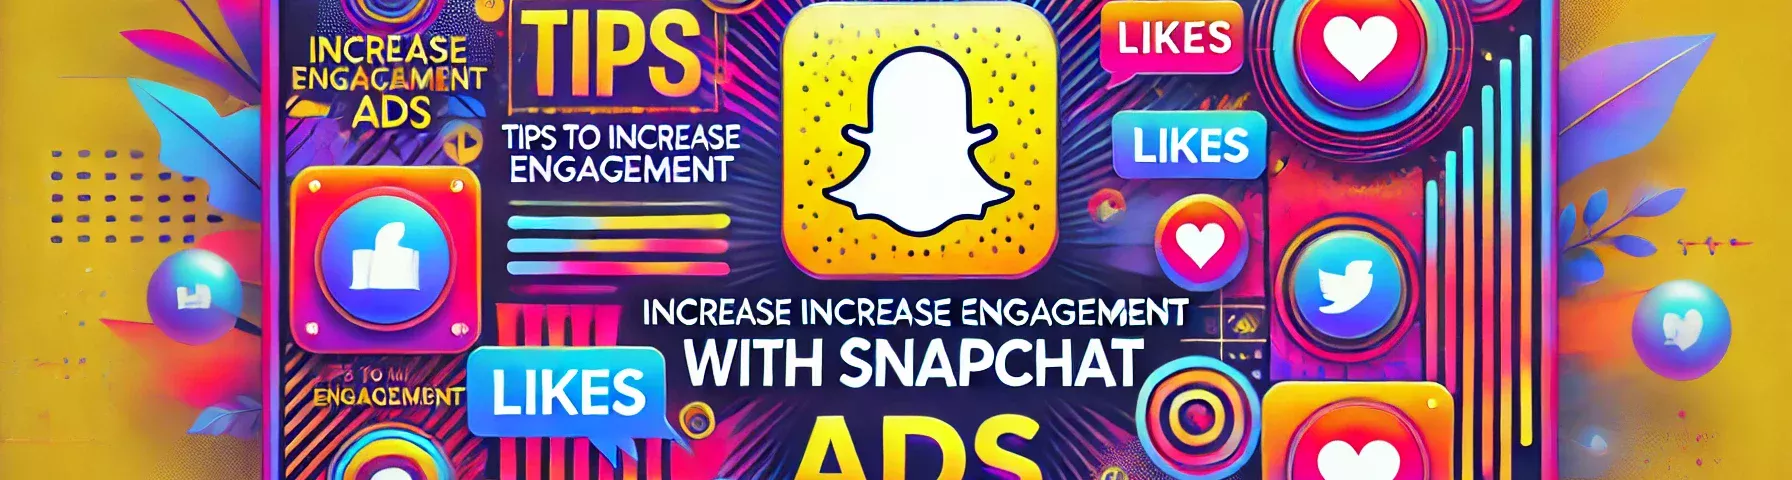 snapchat ads strategies